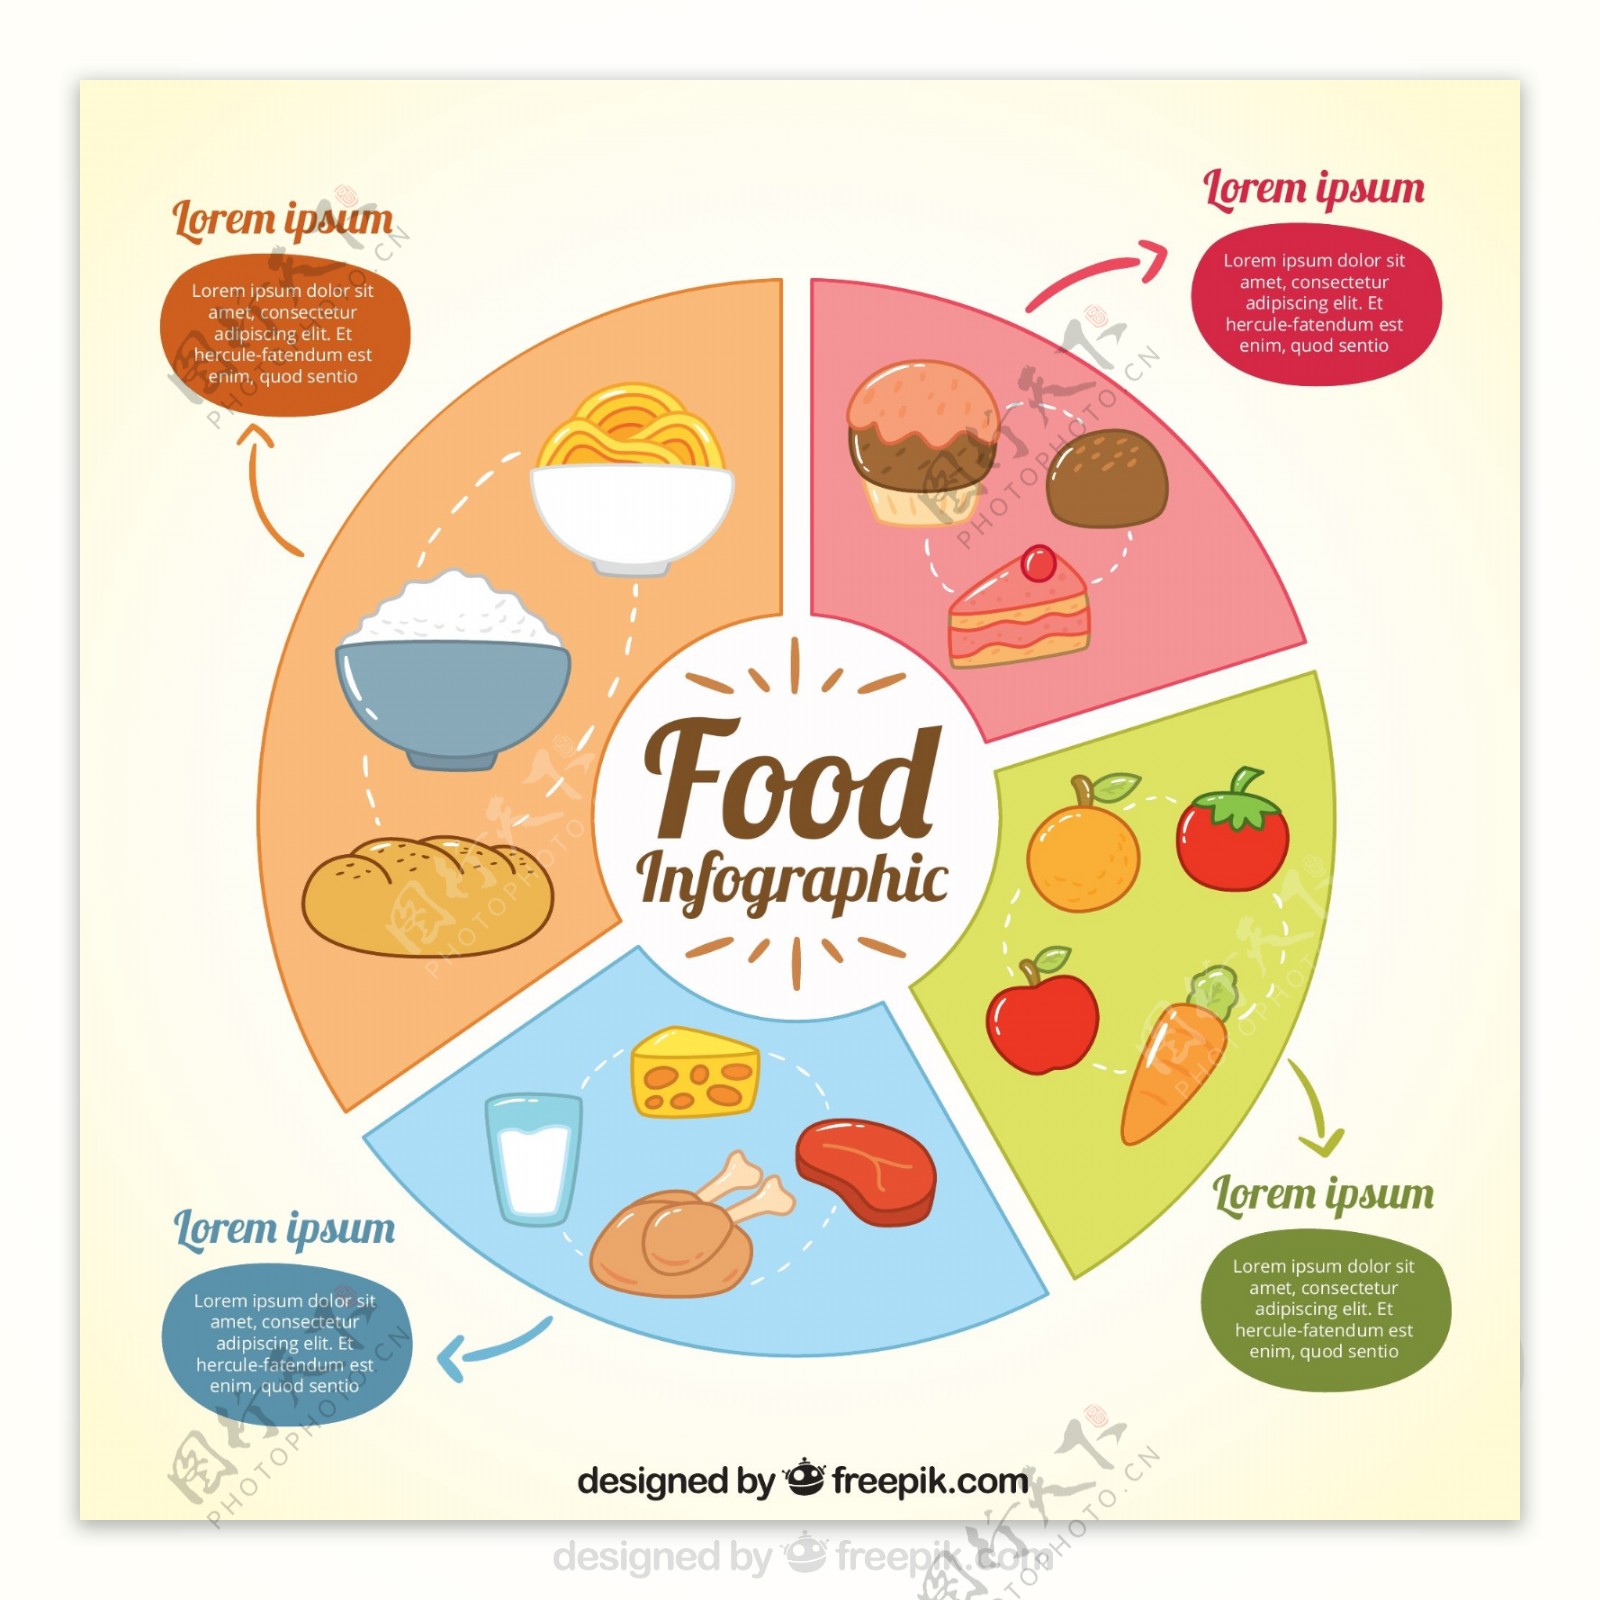 矢量食物素材图表设计